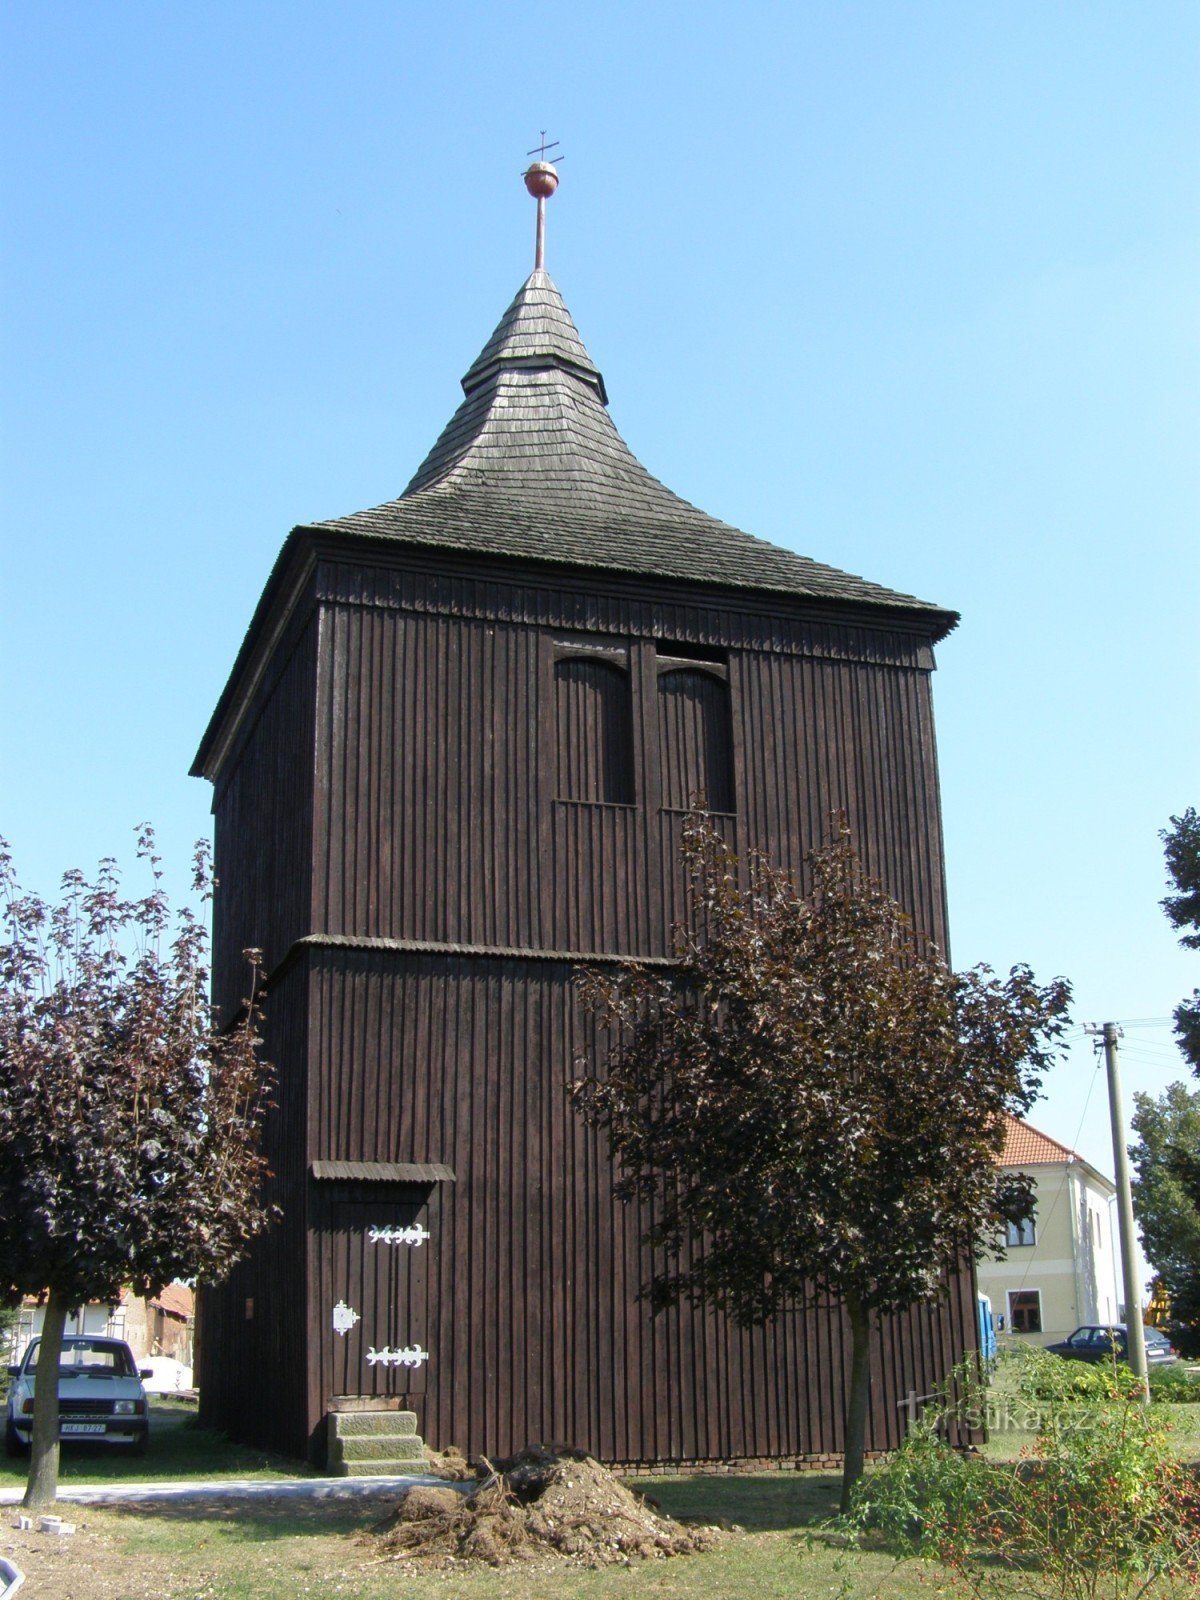 Stará Voda - wooden bell tower